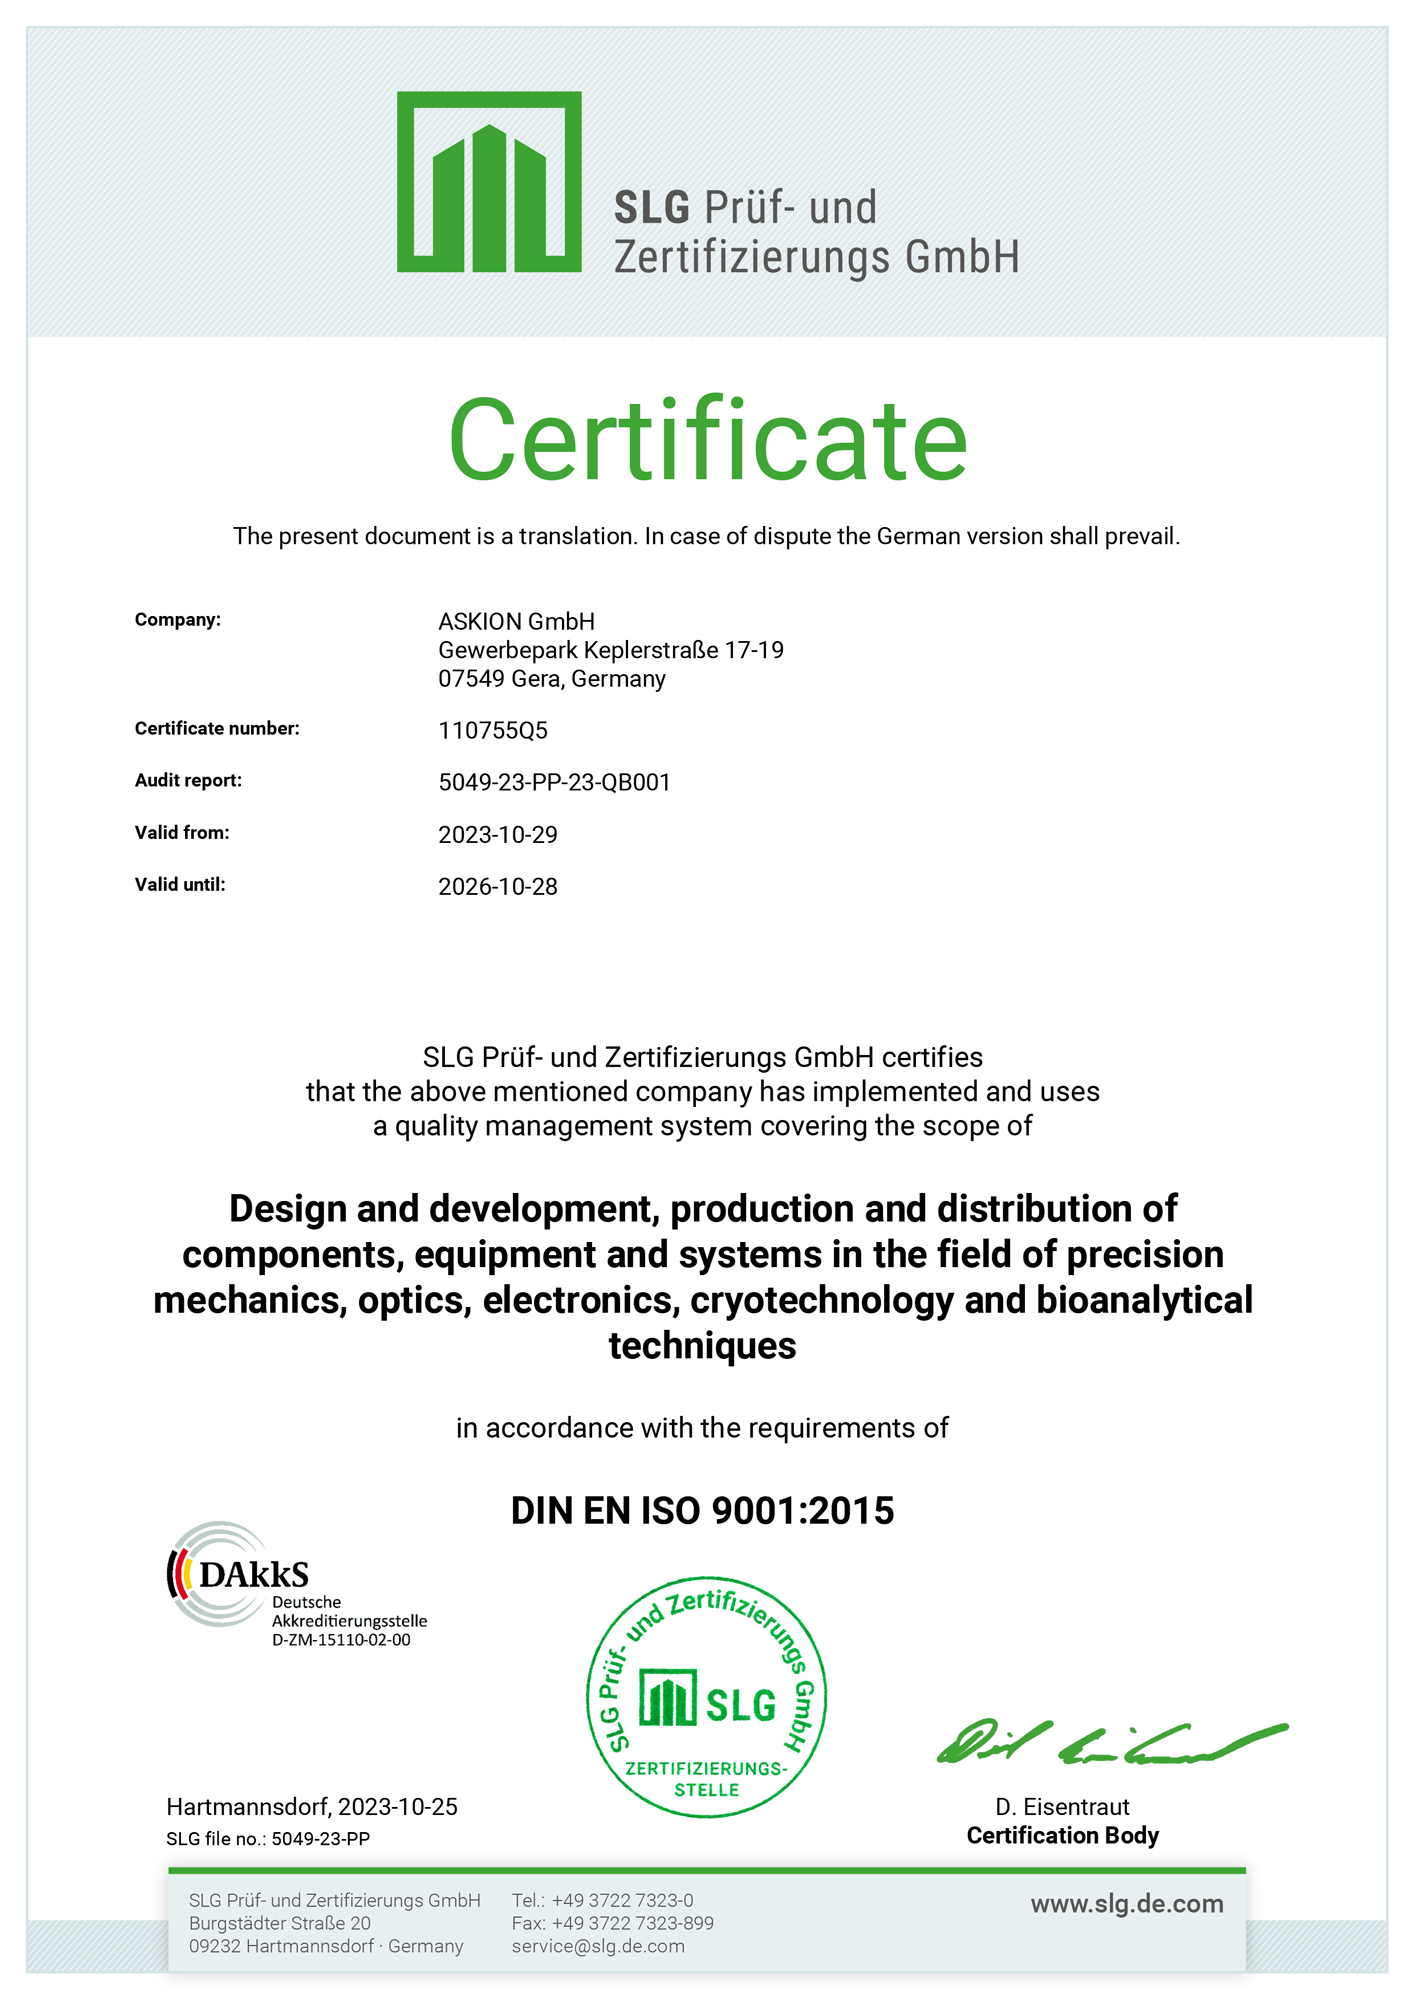 Download Certificate - DIN EN ISO 9001